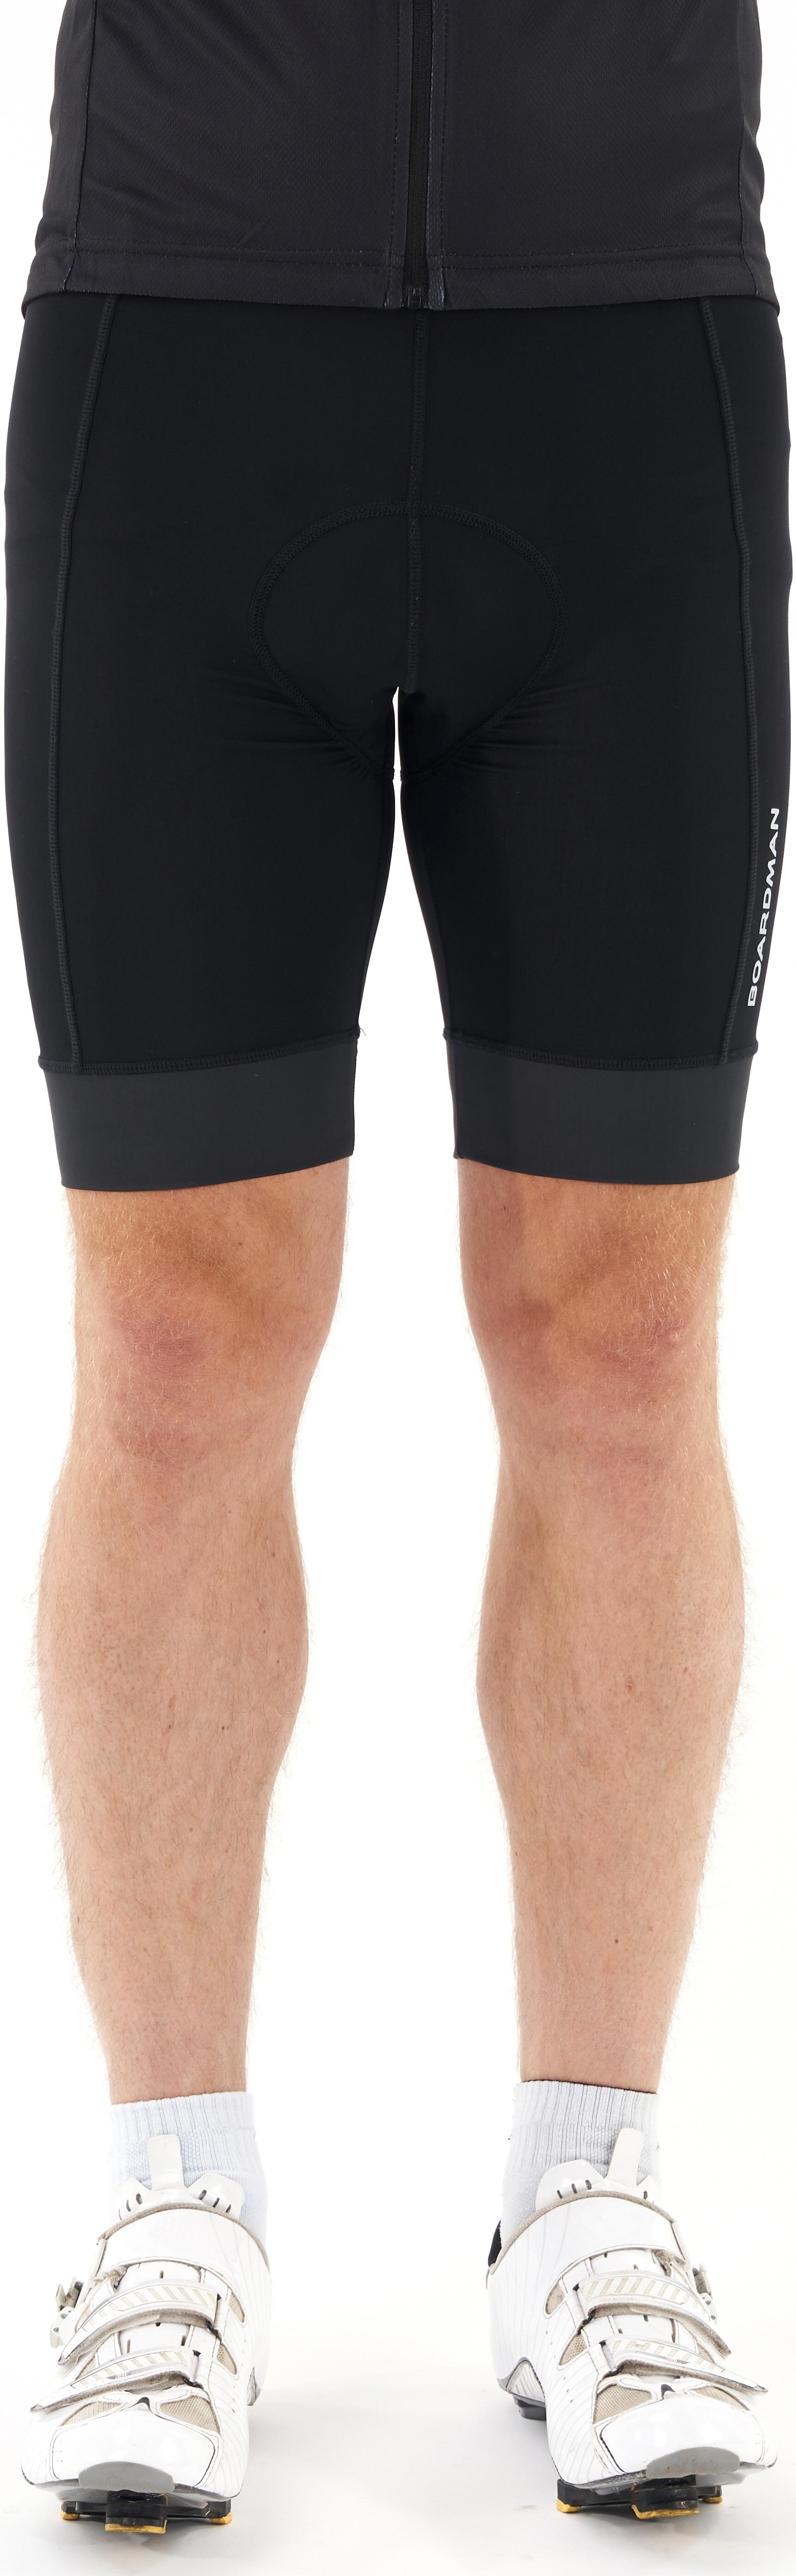 boardman cycling shorts